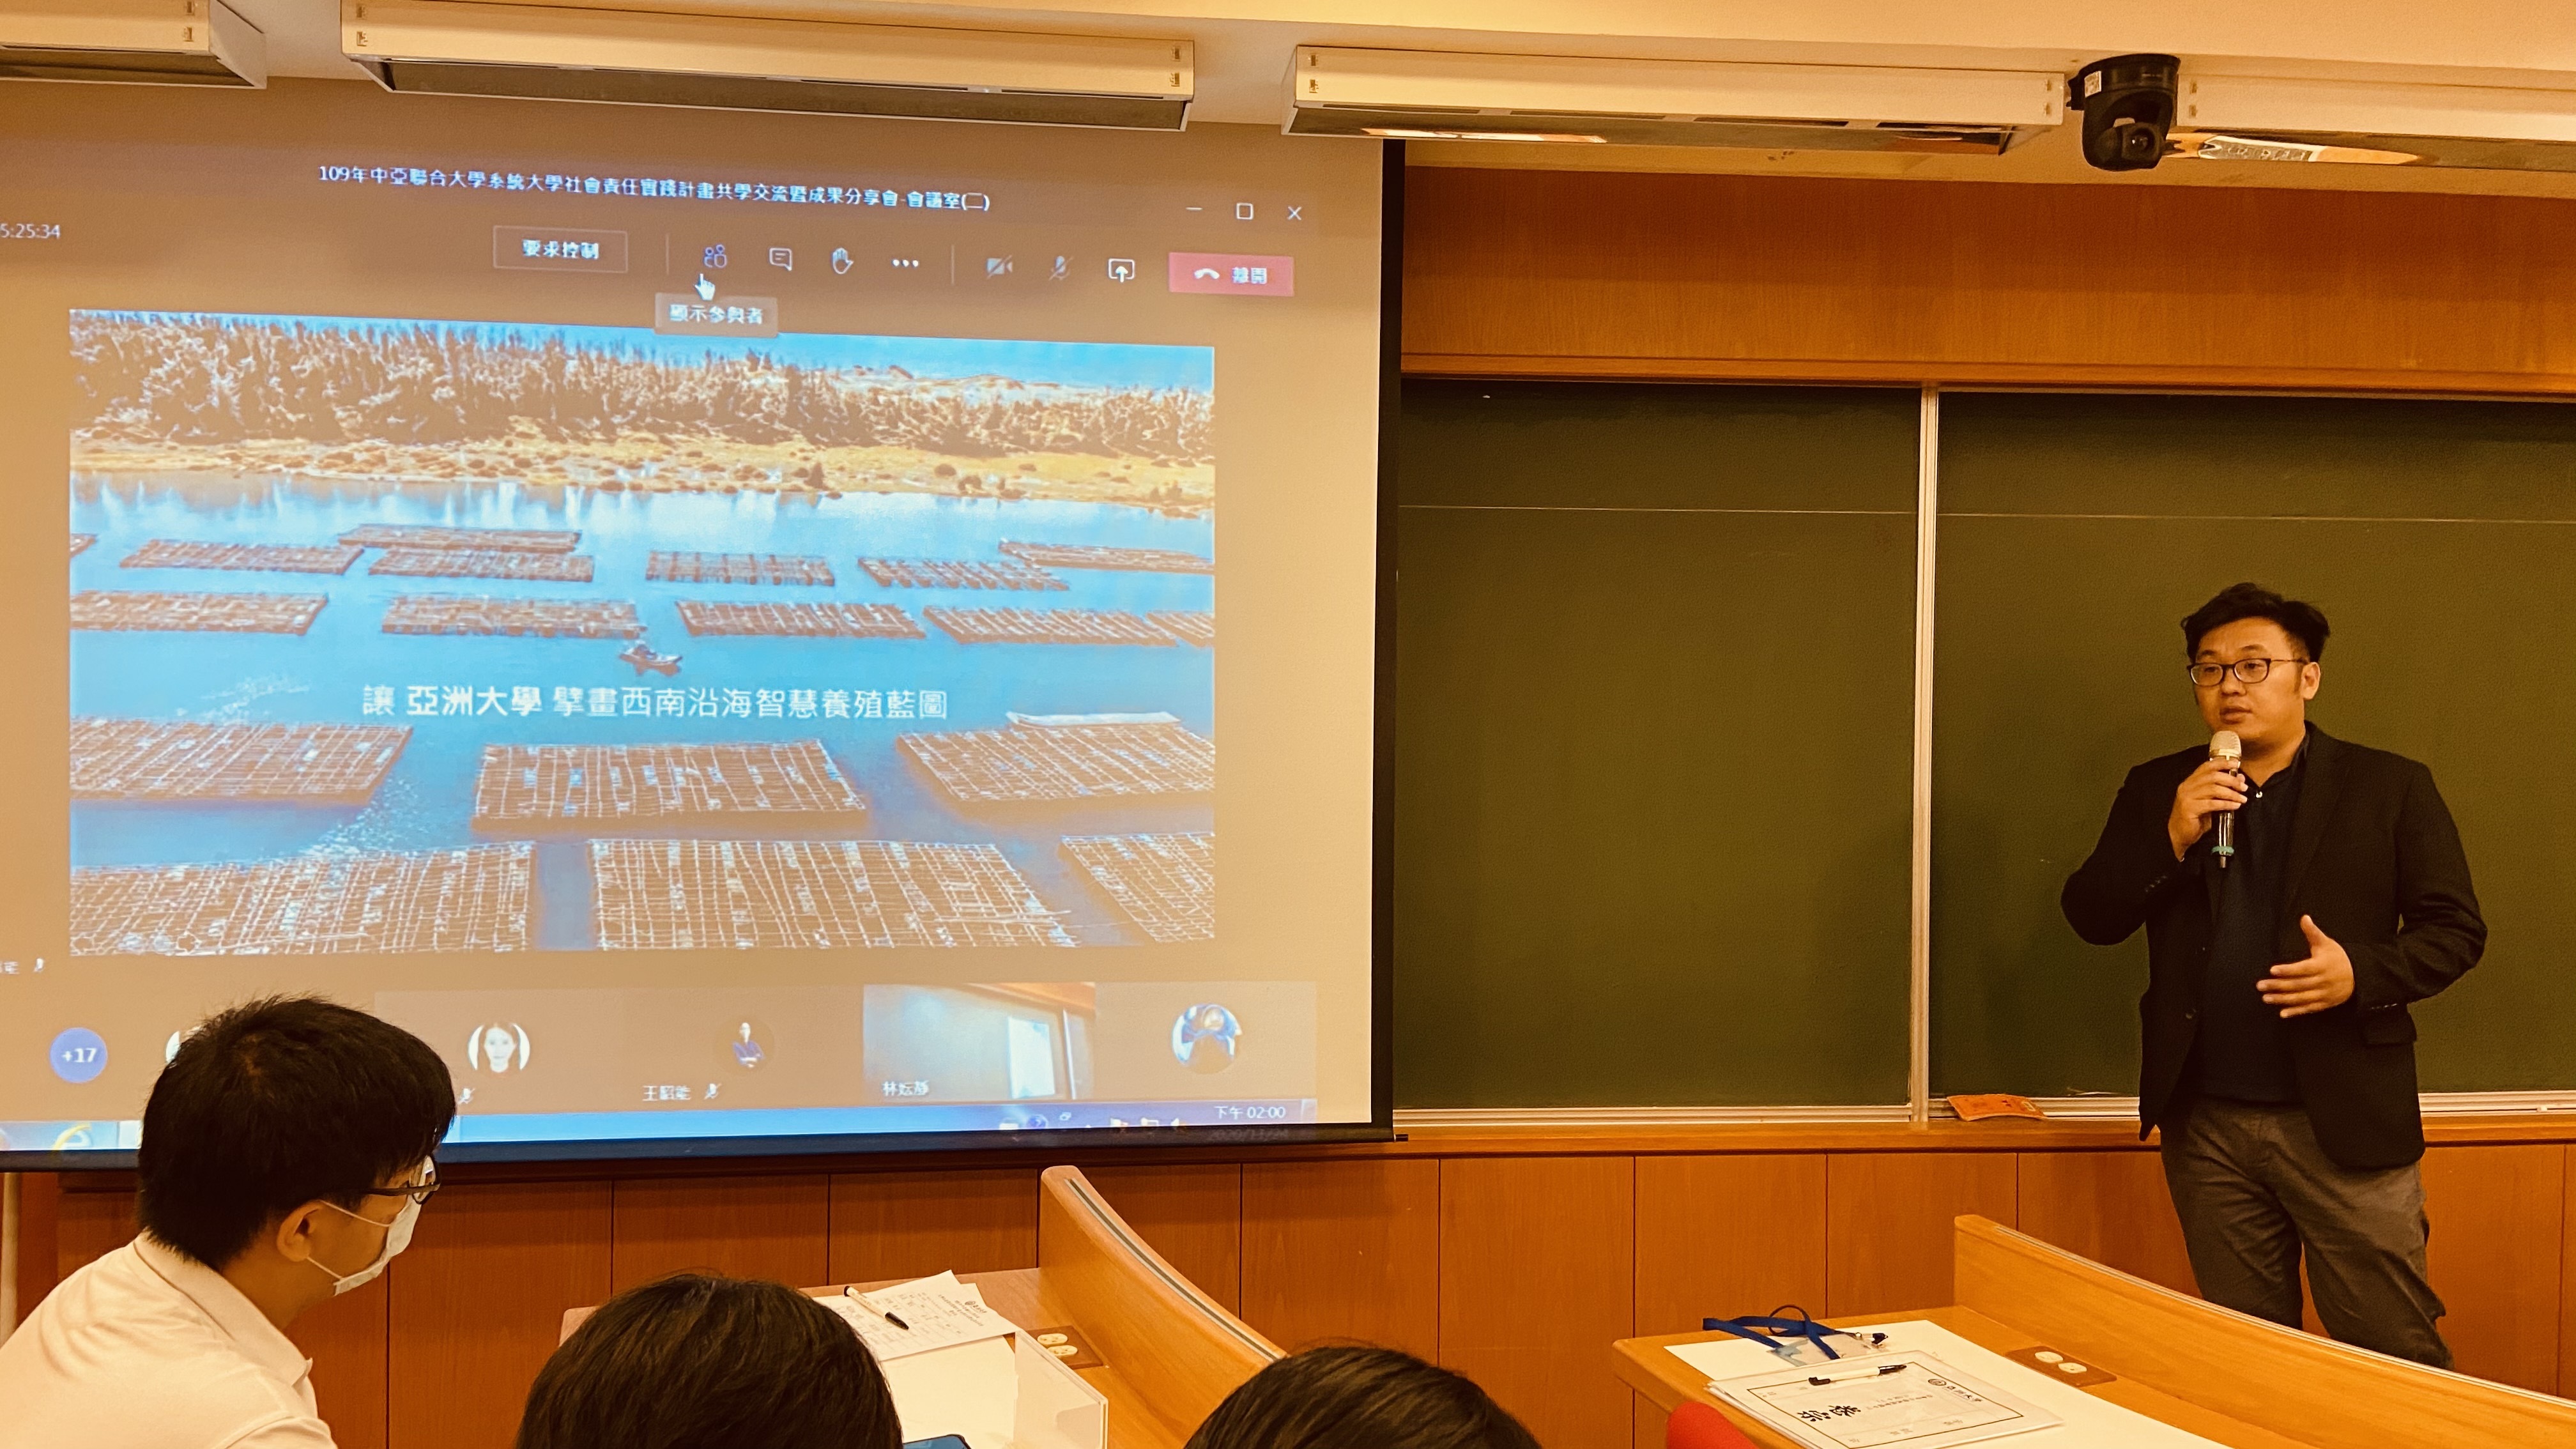 亞大生物資訊與醫學工程學系副教授王昭能，以他的家鄉─台南北門為例，分享藉由科技改善偏鄉漁民的養殖工作。